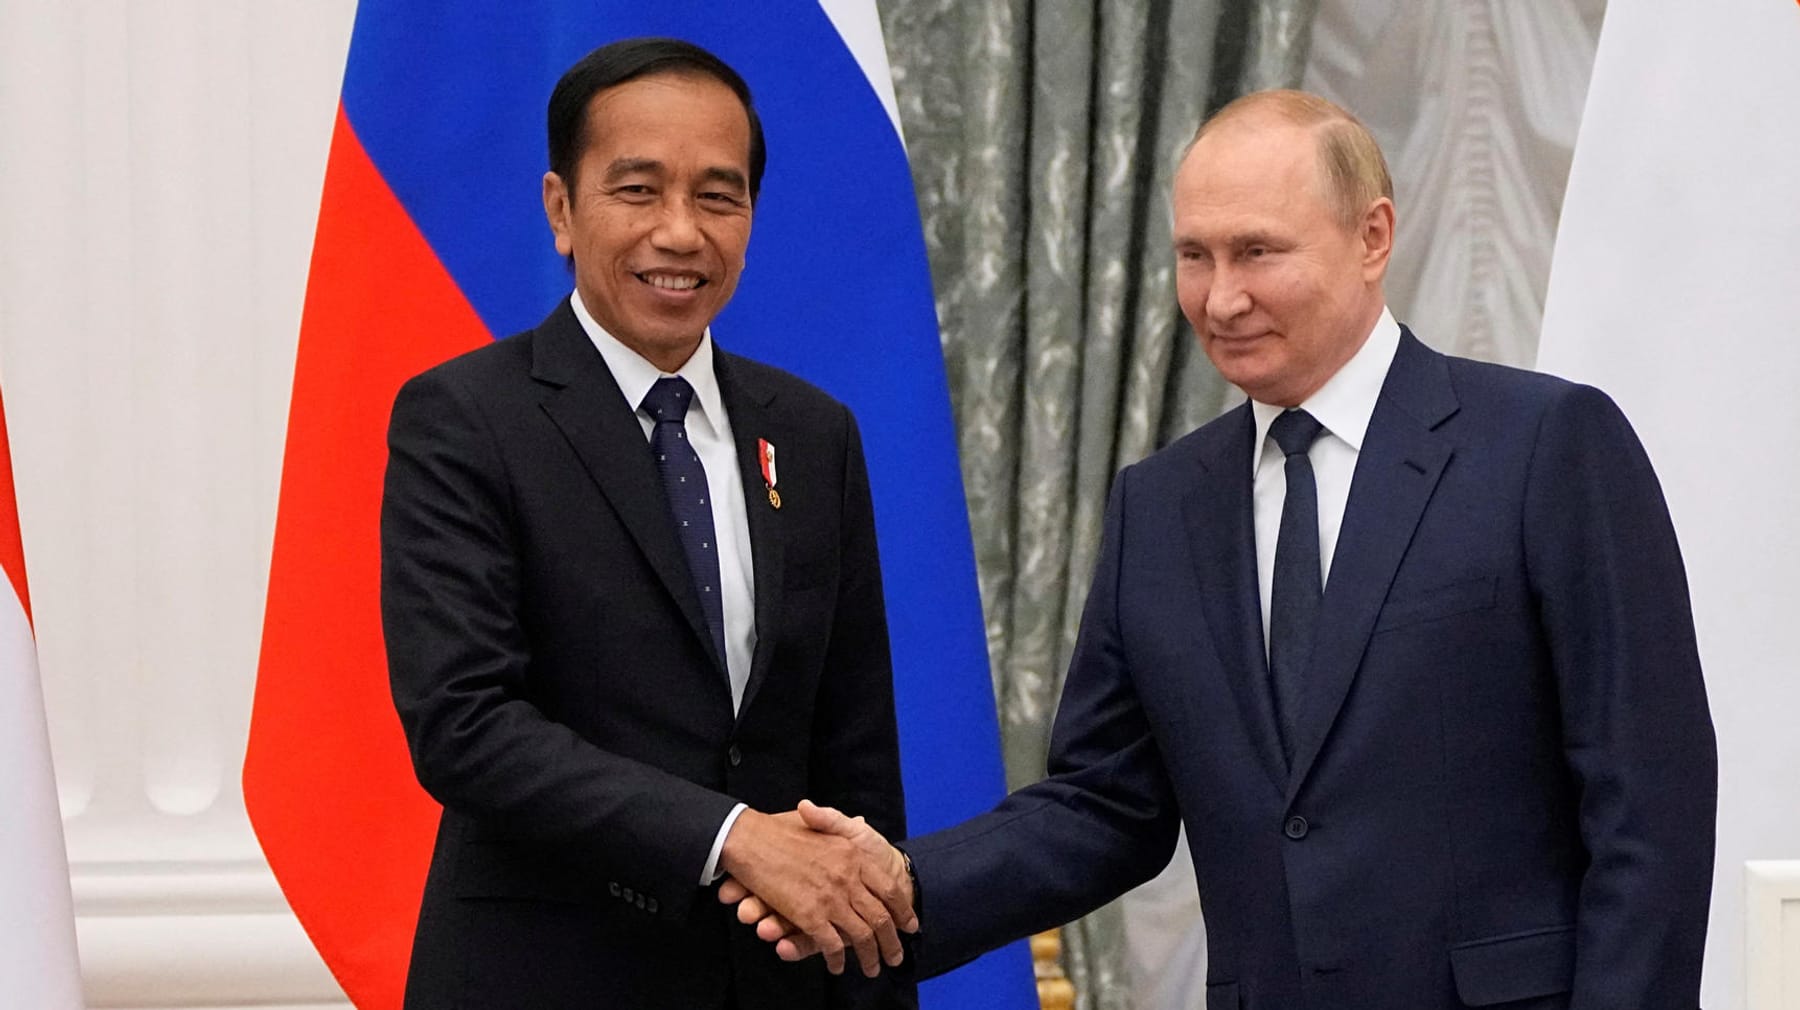 Presiden Indonesia mengunjungi Vladimir Putin – berjabat tangan meskipun mengunjungi Kyiv